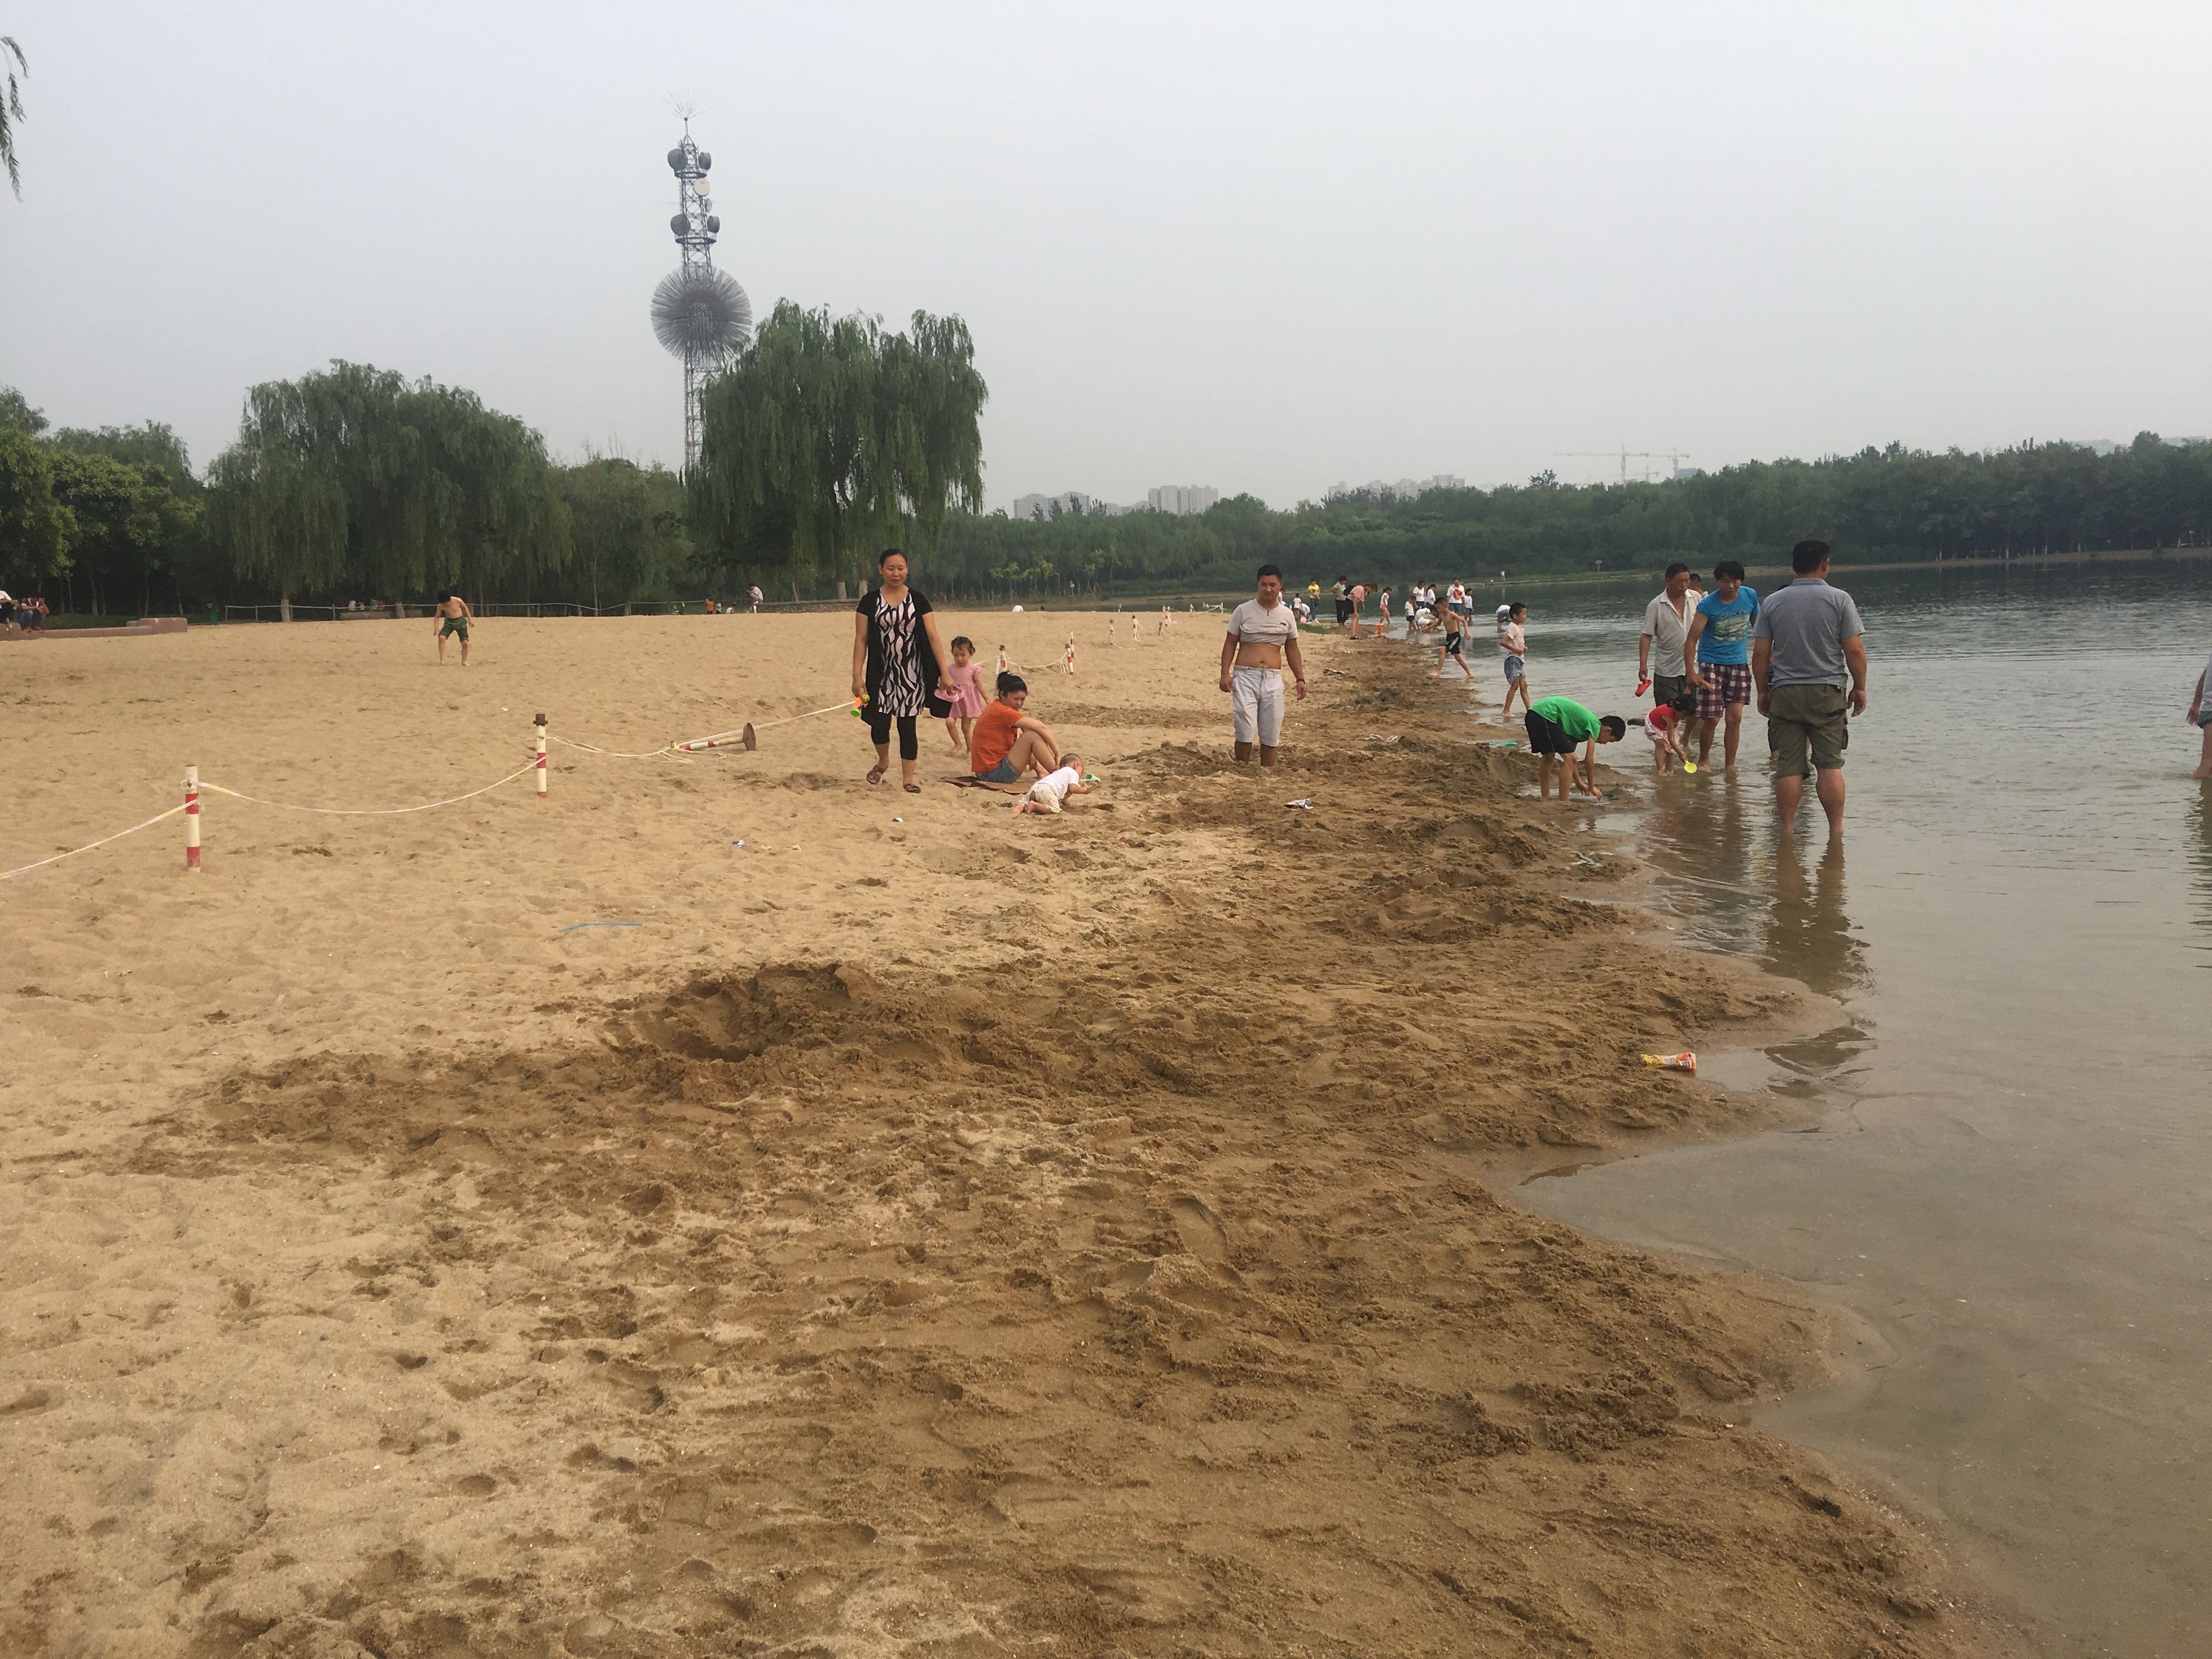 北京朝阳公园 沙滩图片